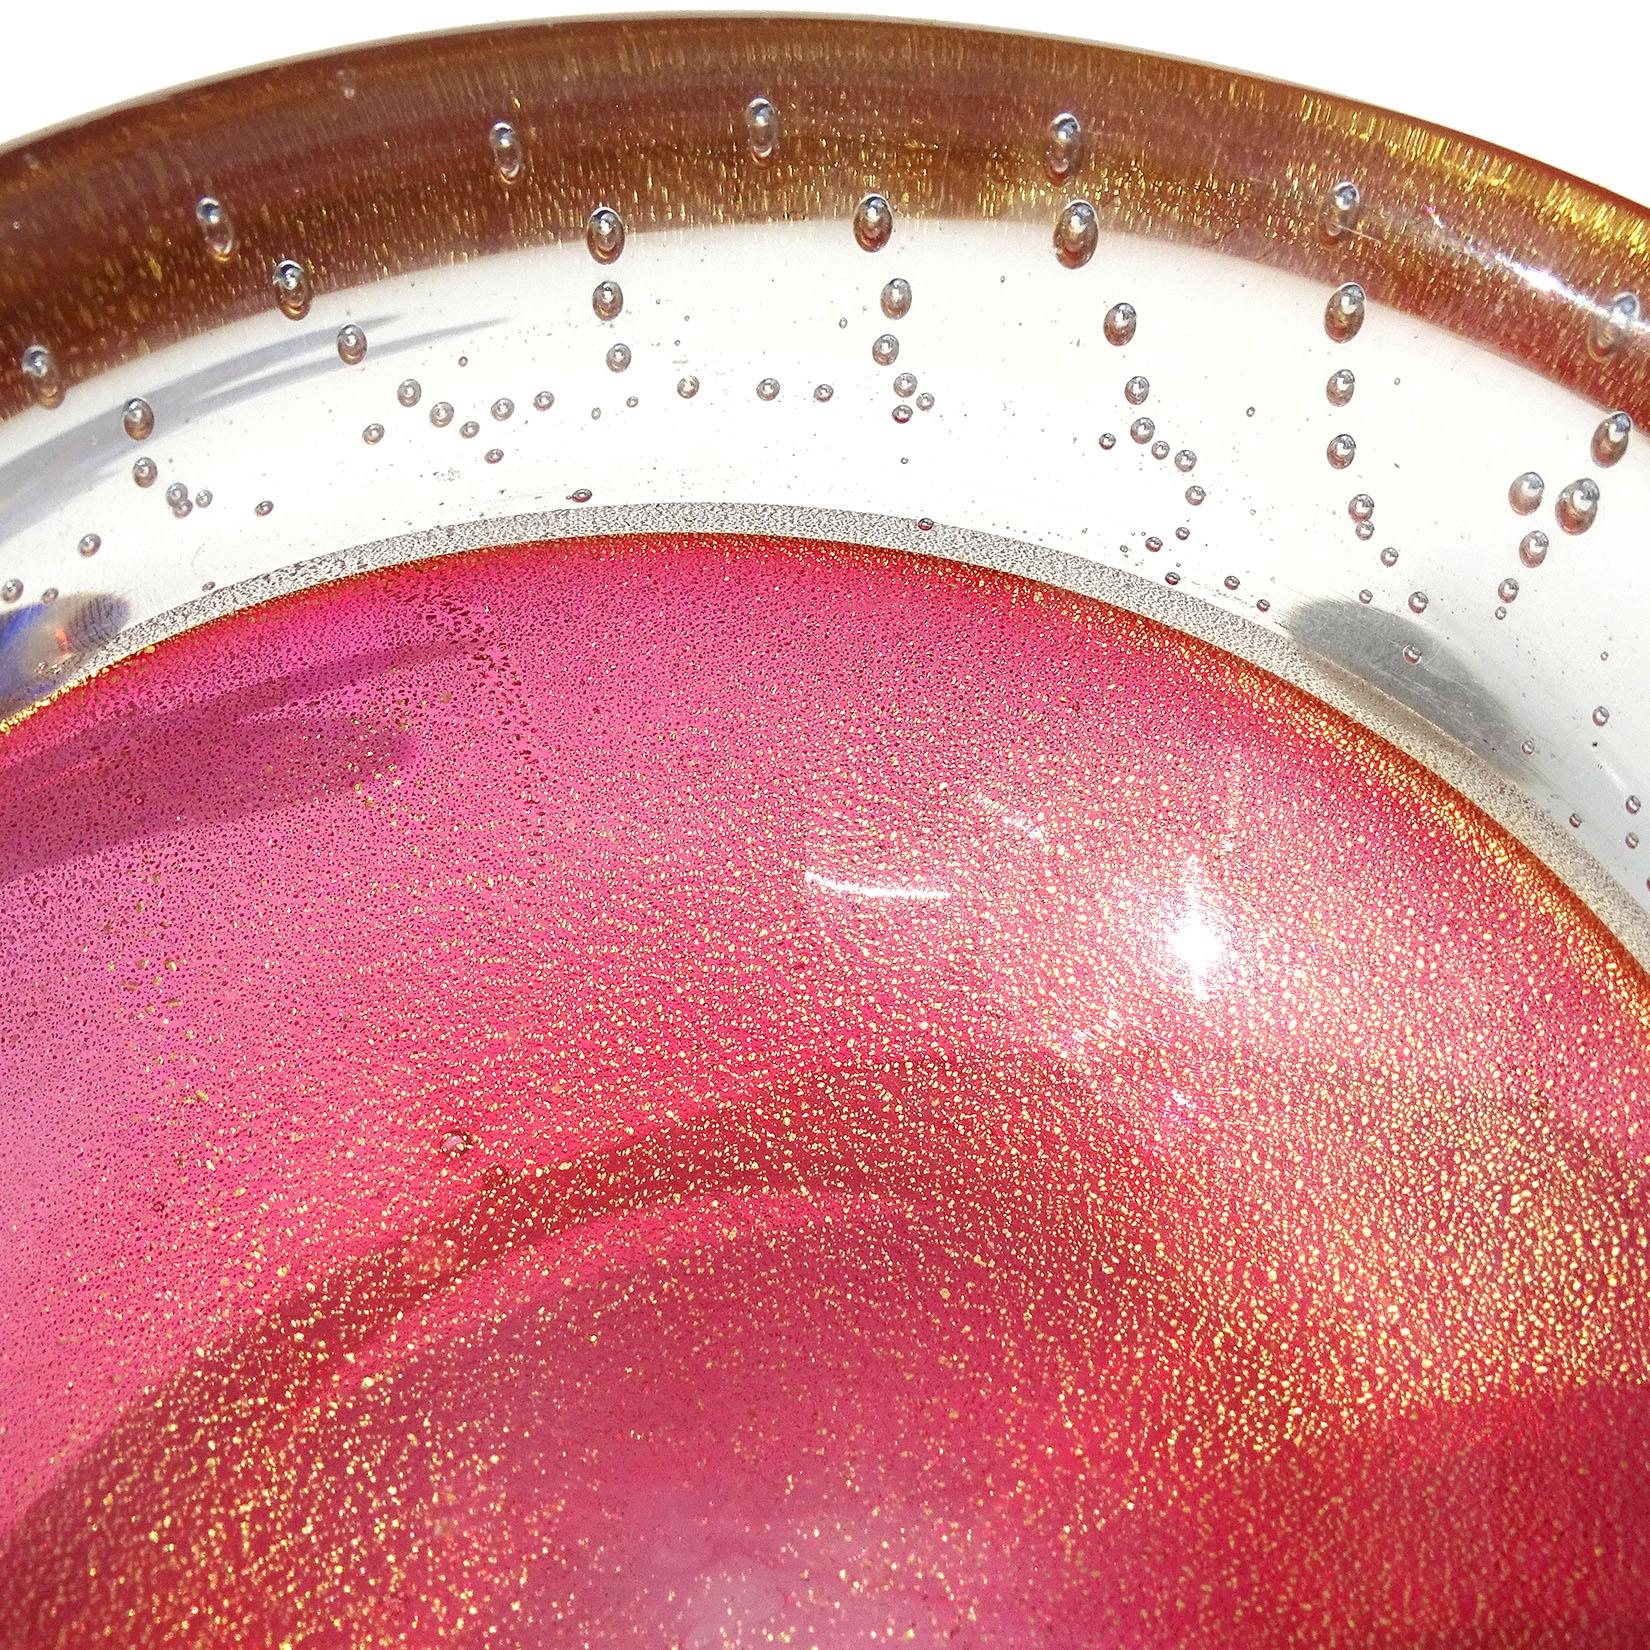 Magnifique bol décoratif vintage en verre soufflé à la main de Murano, avec des bulles transparentes, des mouchetures roses et dorées, en verre d'art italien. Documenté au designer Archimede Seguso, vers les années 1950. Créée selon la technique de